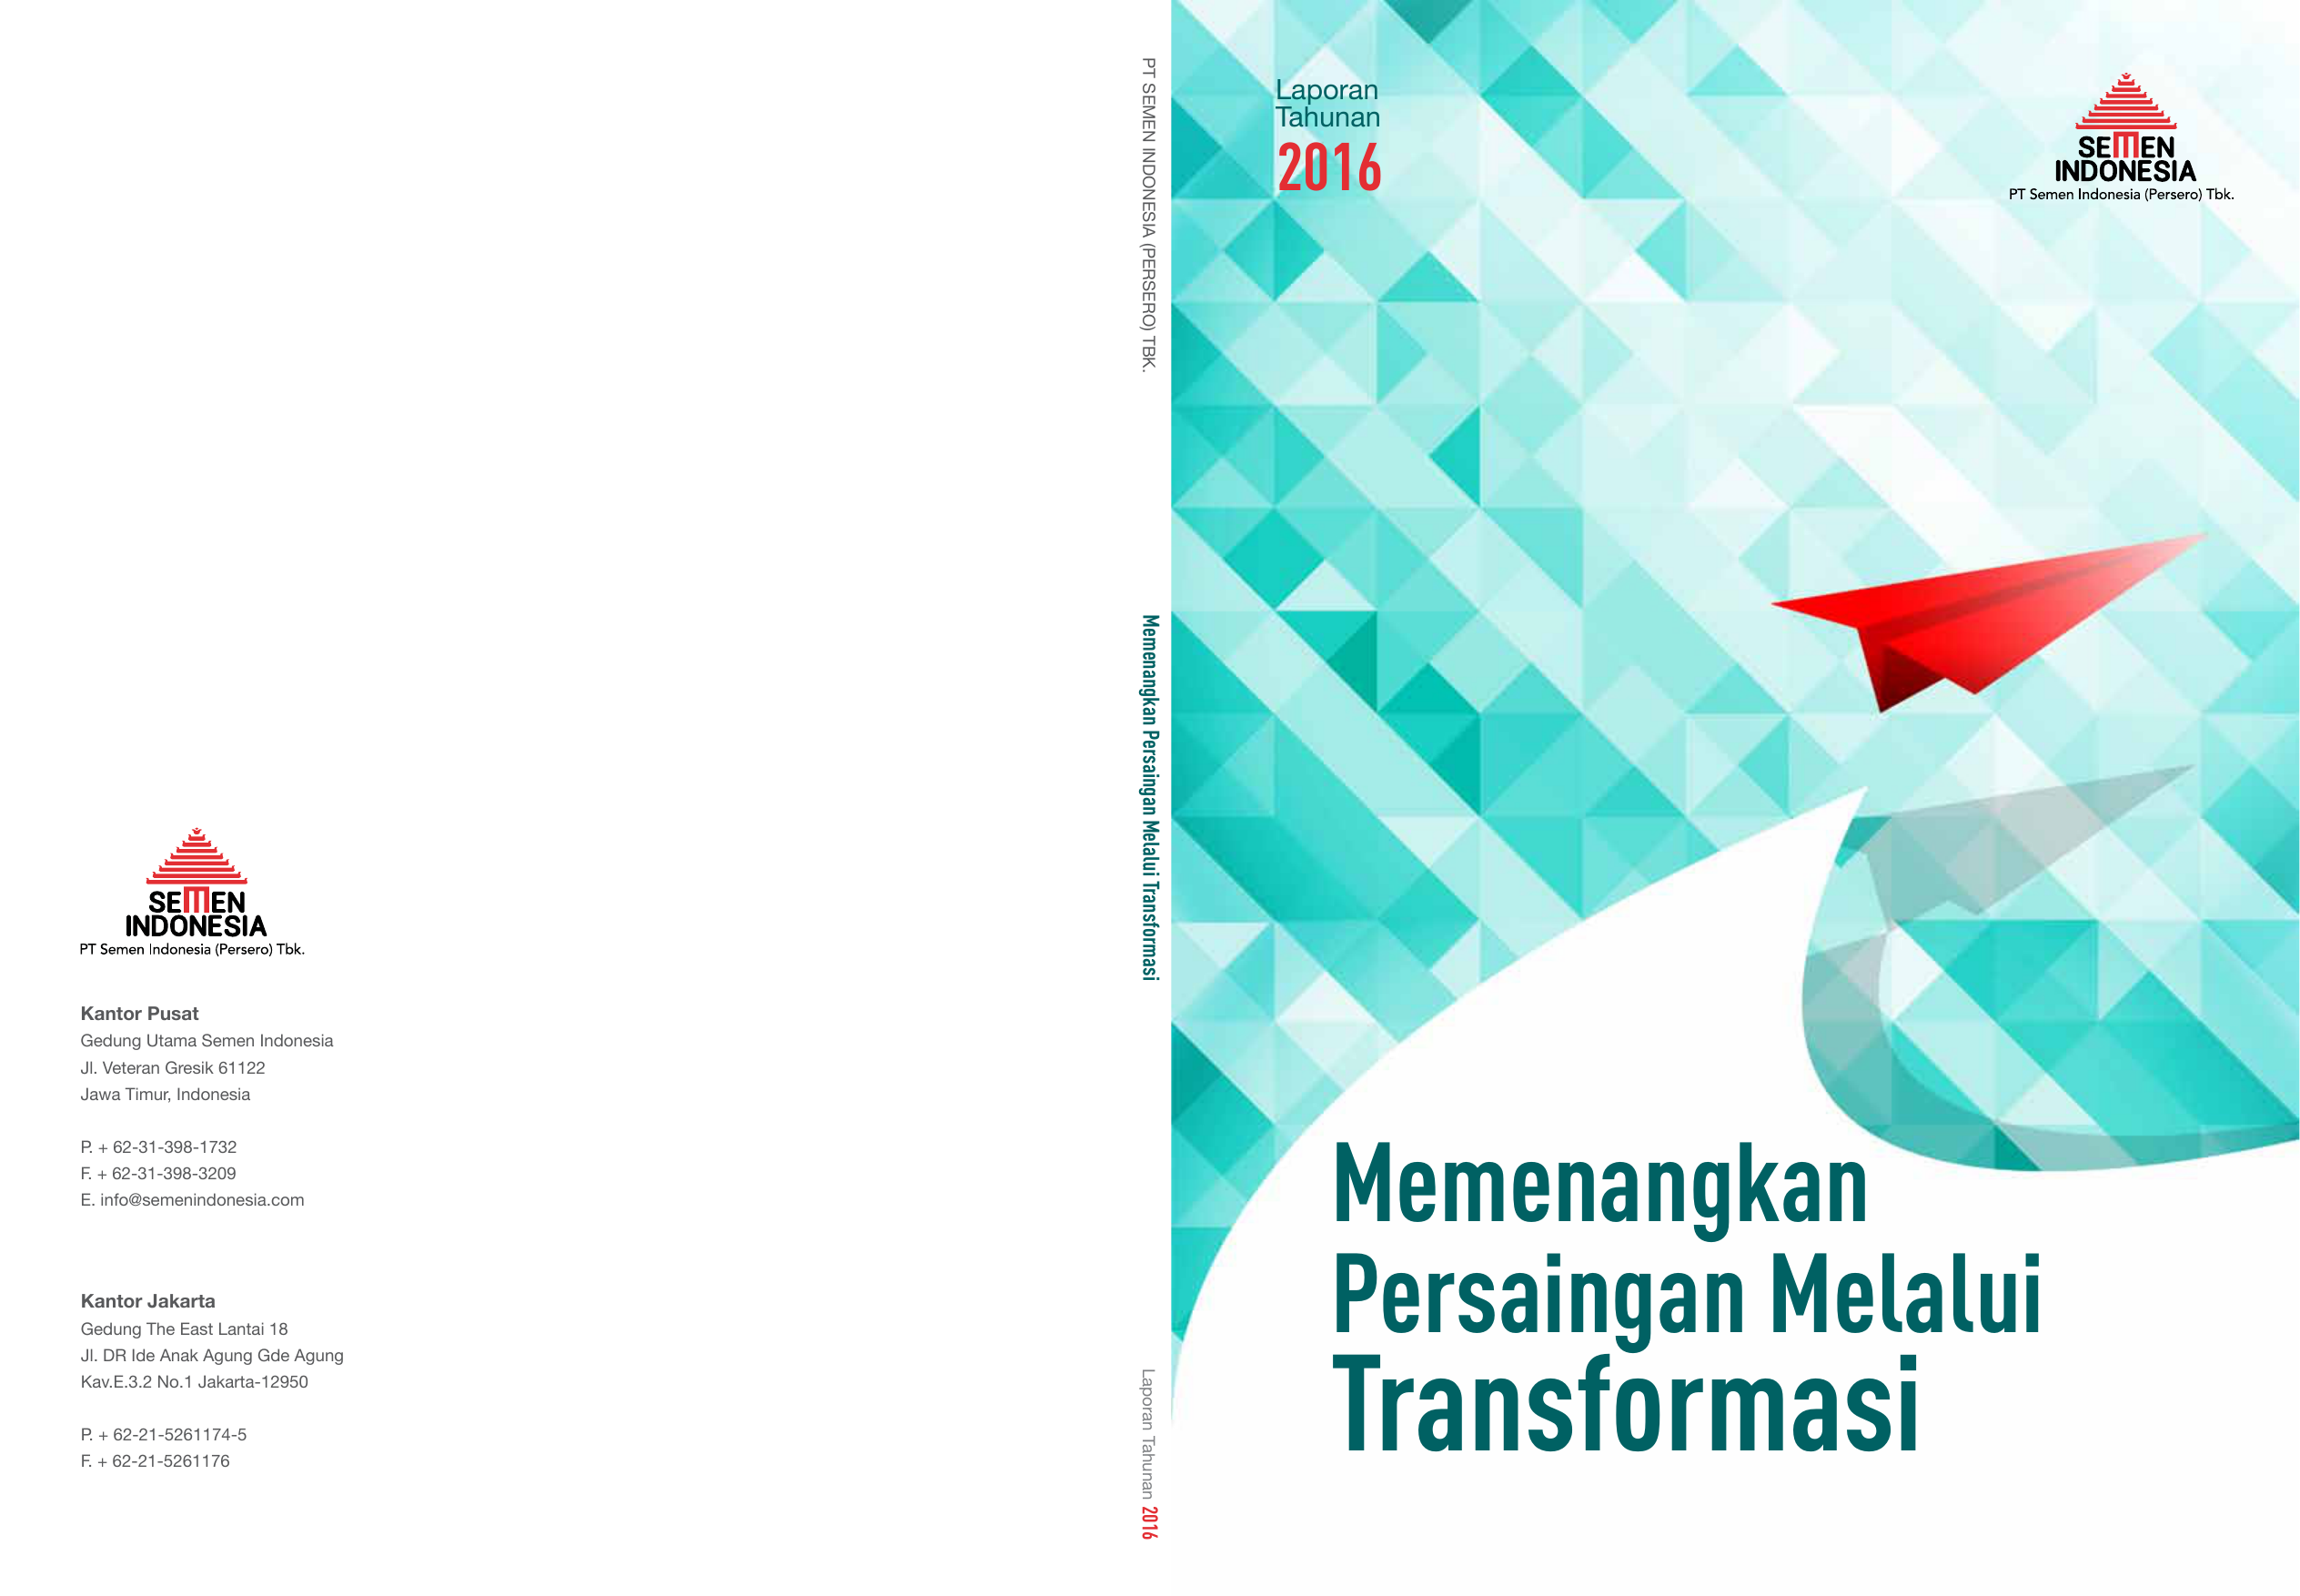 Tbk Laporan Tahunan 2016 Memenangkan Persaingan Melalui Transformasi Kantor Pusat Gedung Utama Semen Indonesia Jl Veteran Gresik Jawa Timur